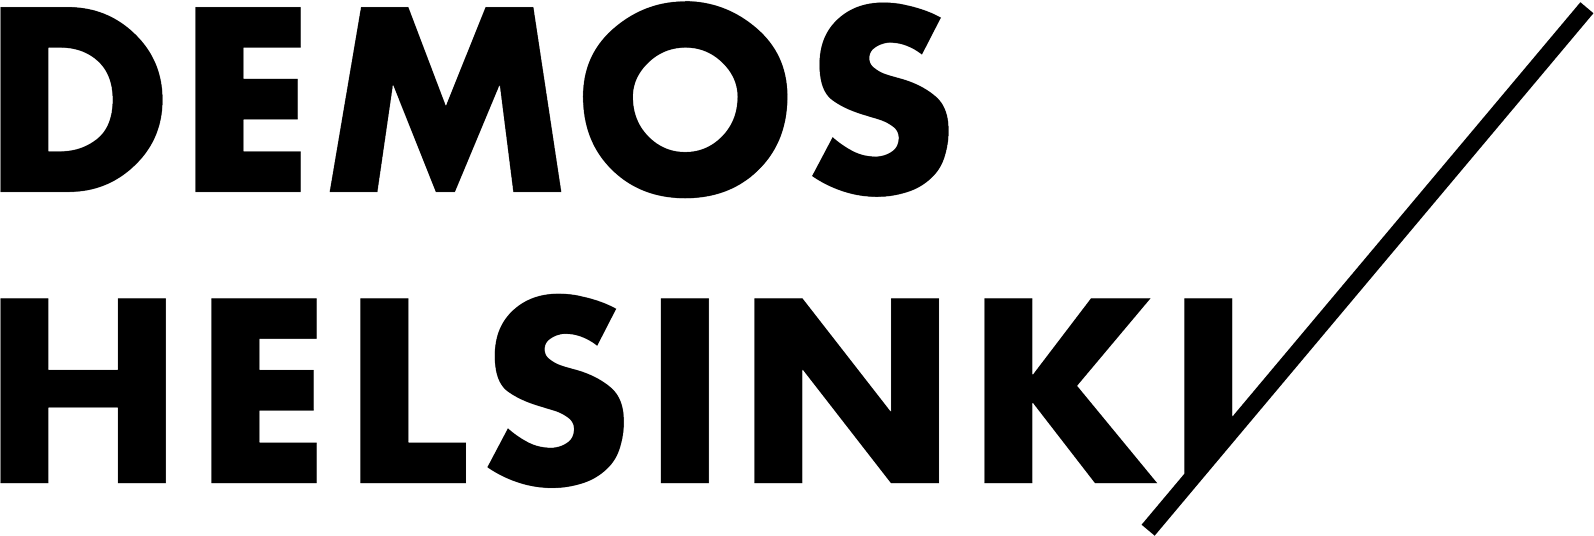 DemosHelsinki : Brand Short Description Type Here.